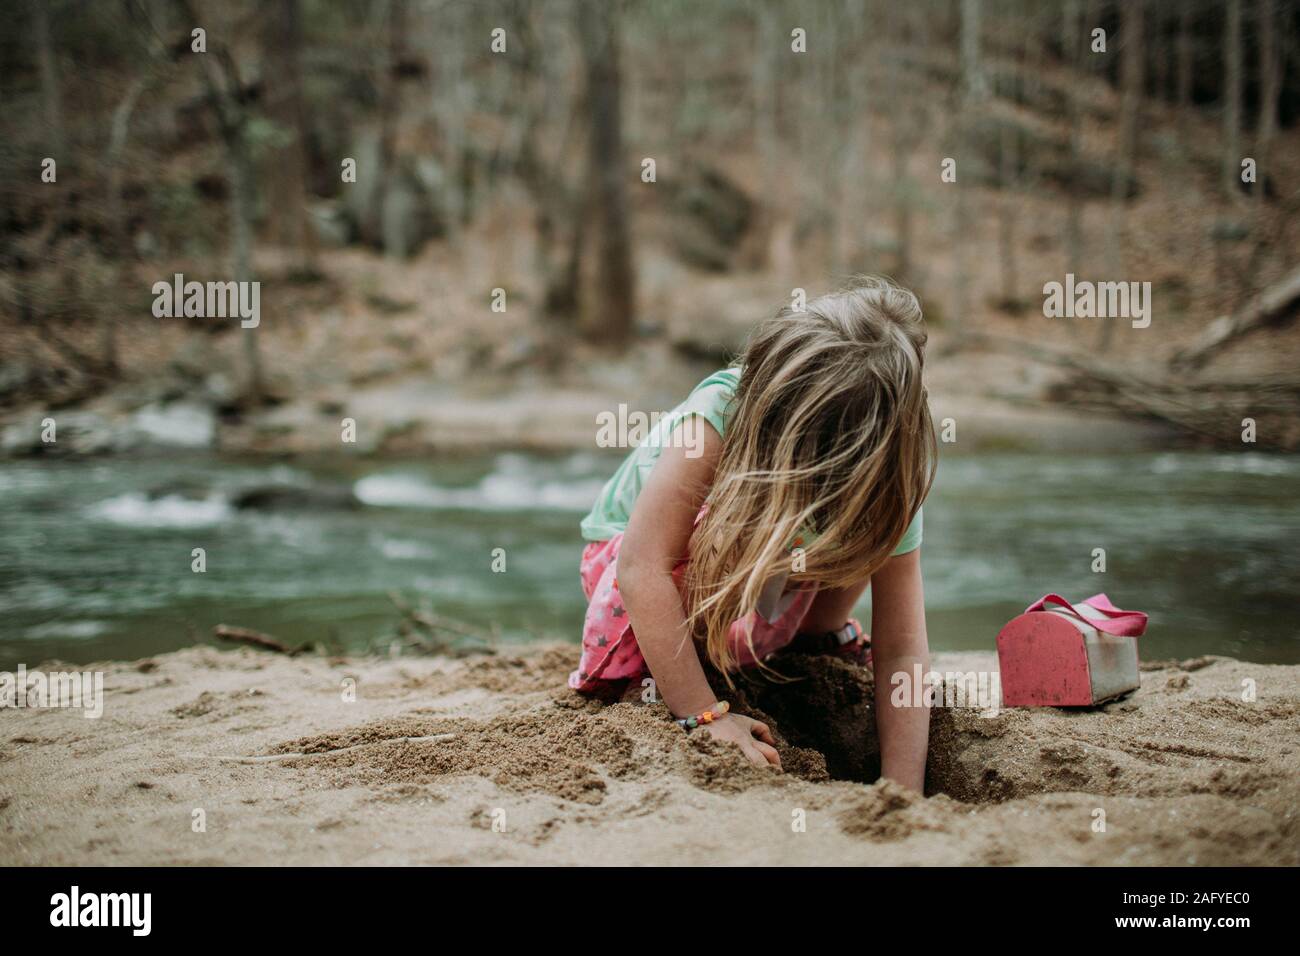 Volto Ritratto di giovane ragazza il riverbank giocando nella sabbia Foto Stock